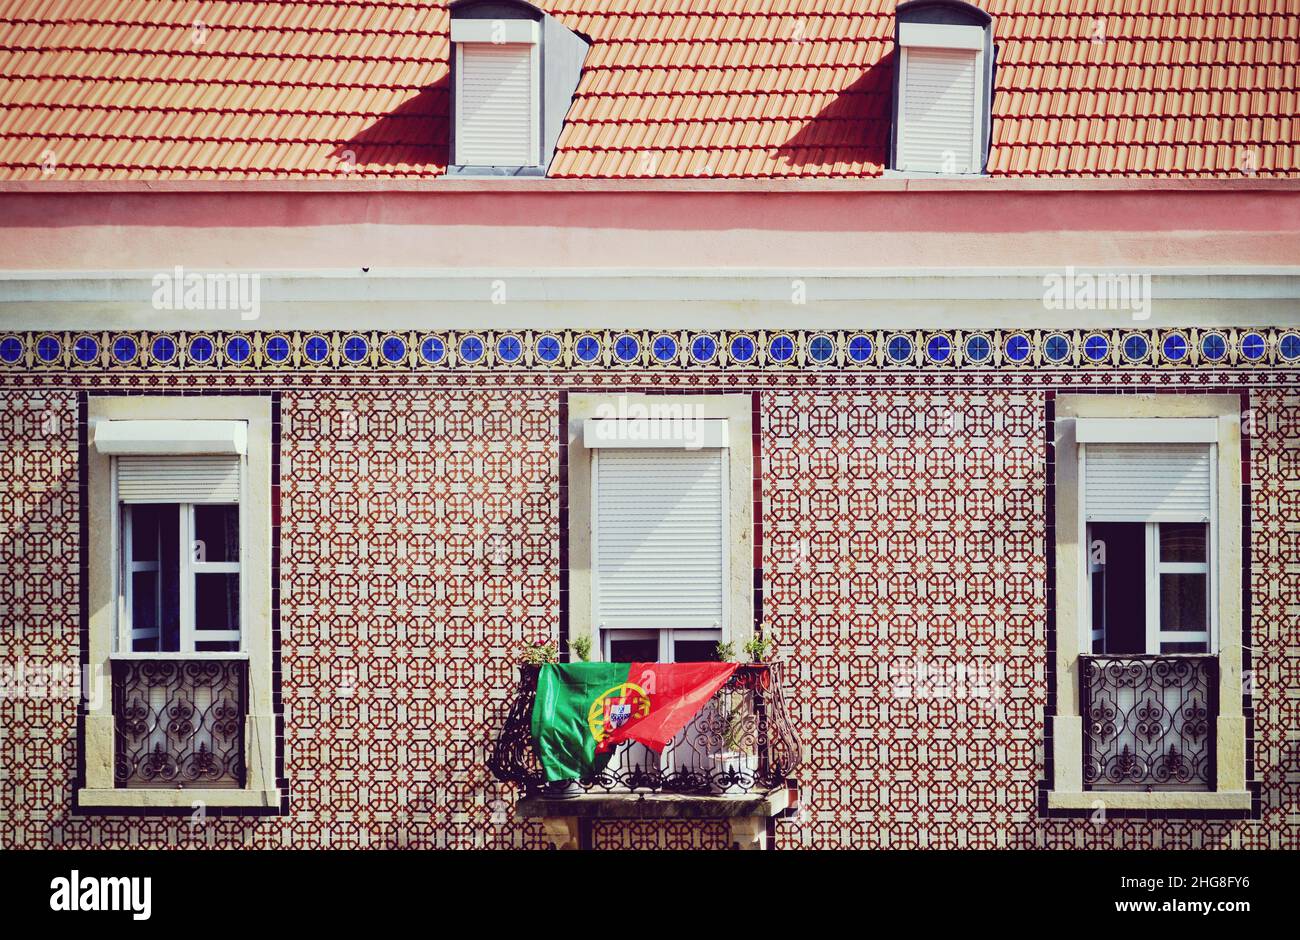 Facciata di un edificio a Lisbona, con iconici azulejos o piastrelle di ceramica e una bandiera ondulata del Portogallo appesa alla finestra Foto Stock